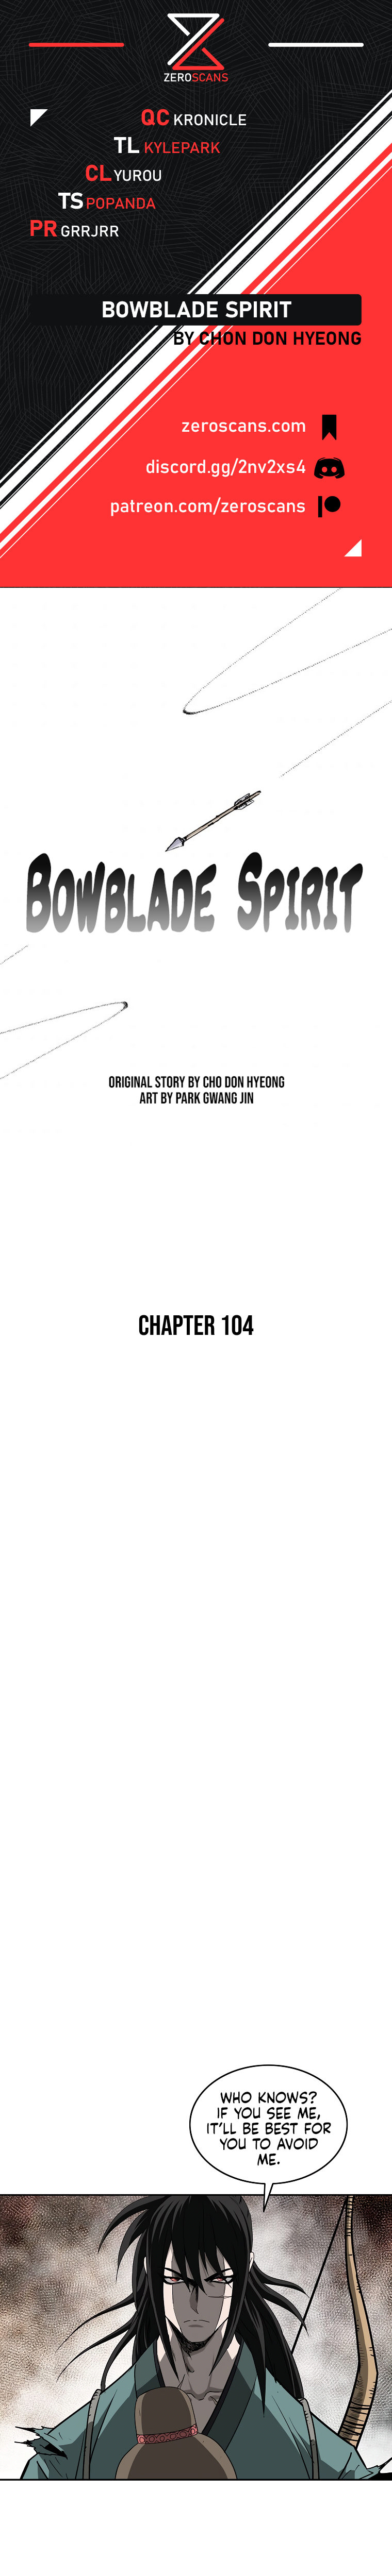 Bowblade Spirit - Chapter 104 Page 1